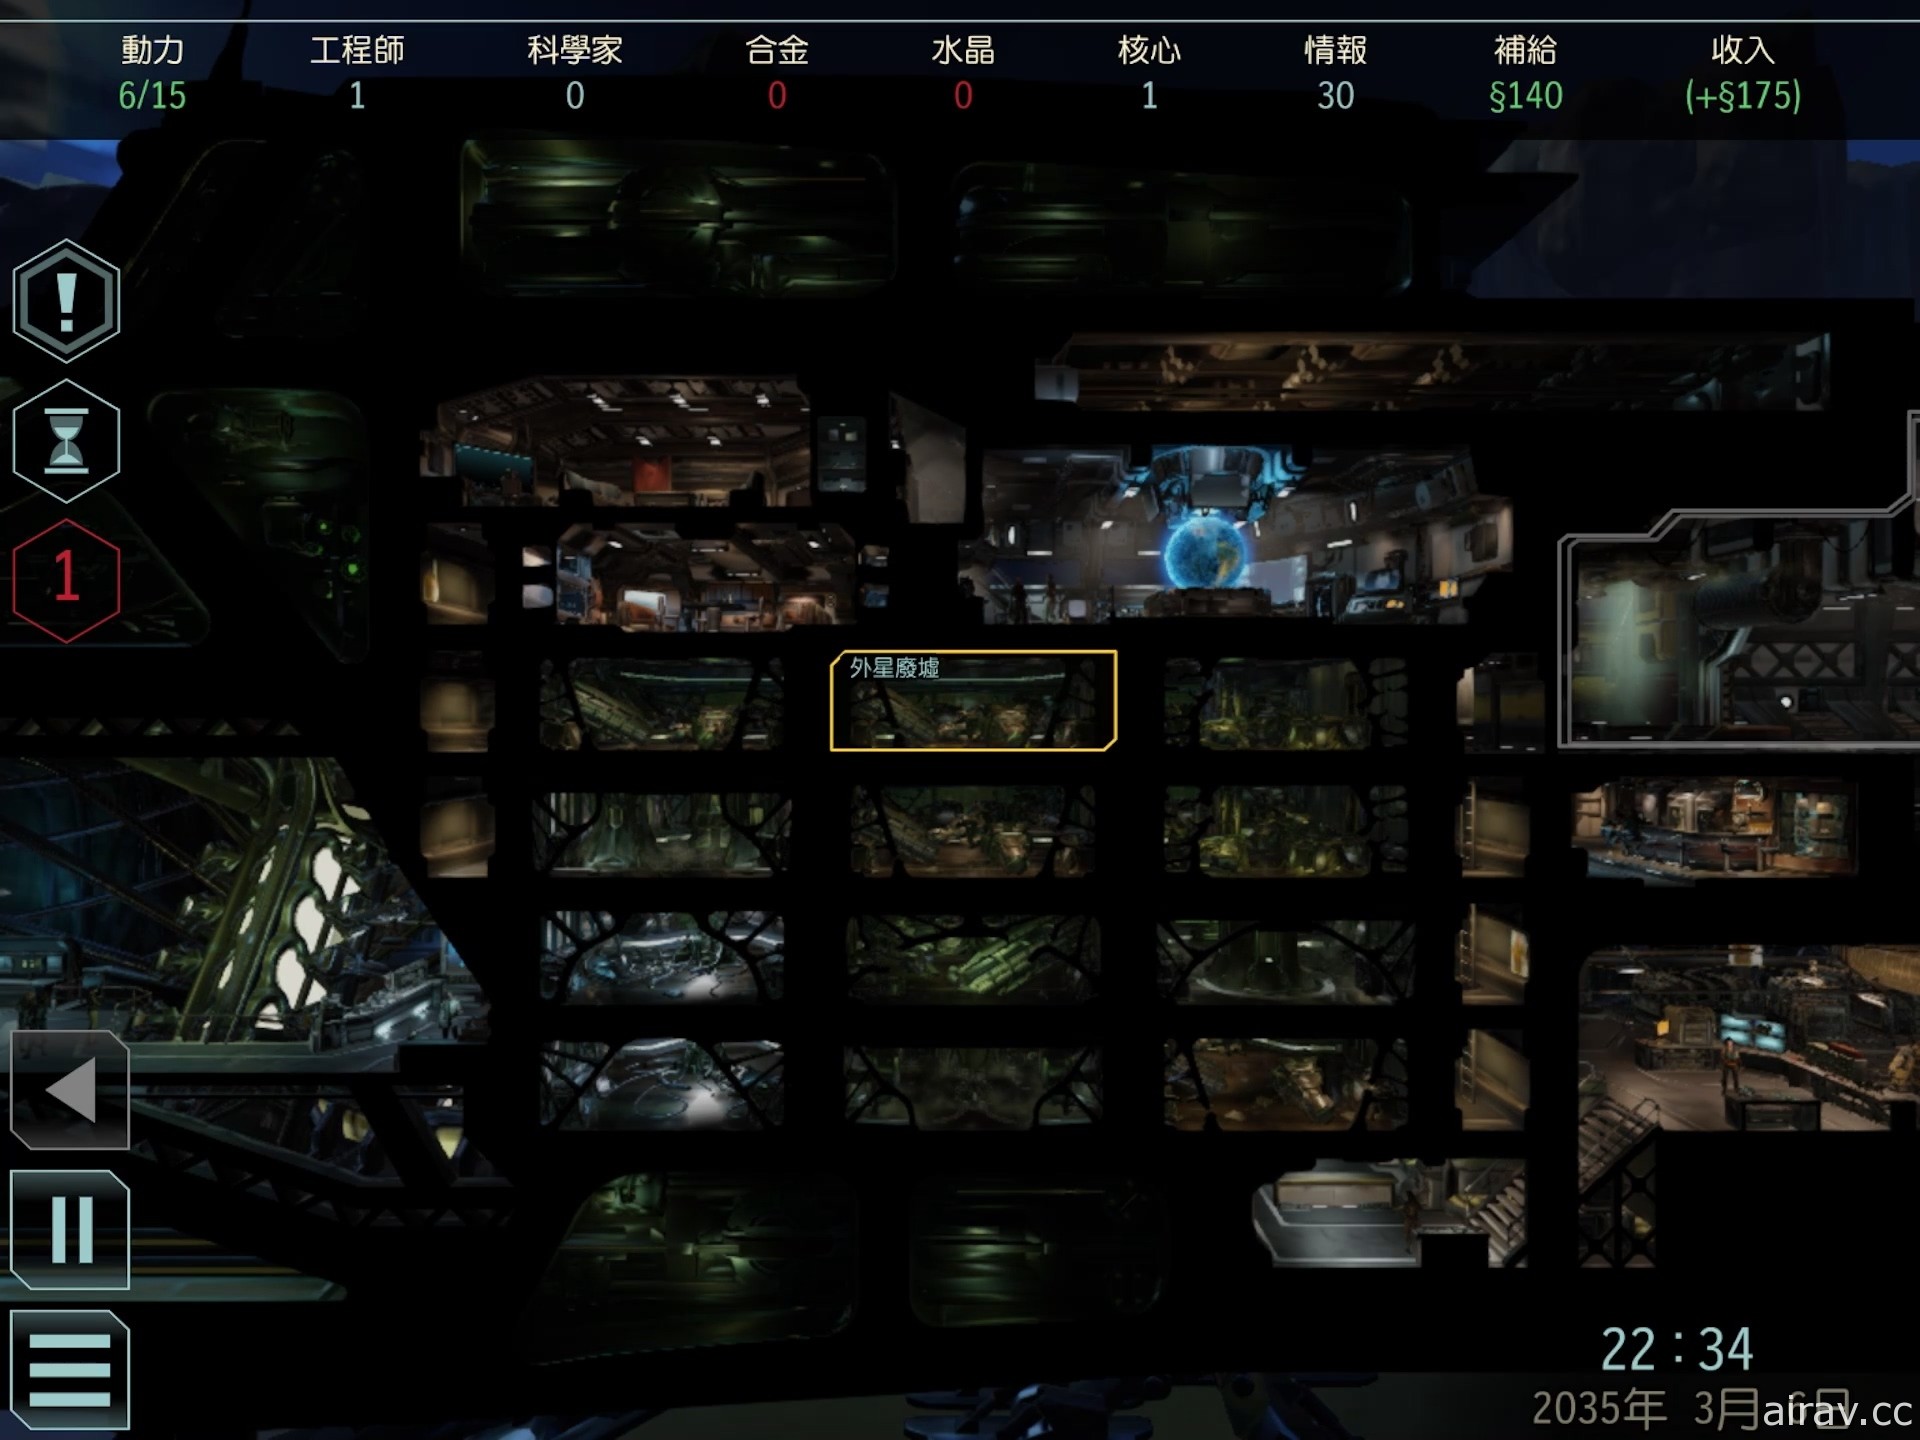 【試玩】《XCOM 2 典藏合輯》隨時隨地化身指揮官 帶領士兵反抗侵略地球的外星部隊